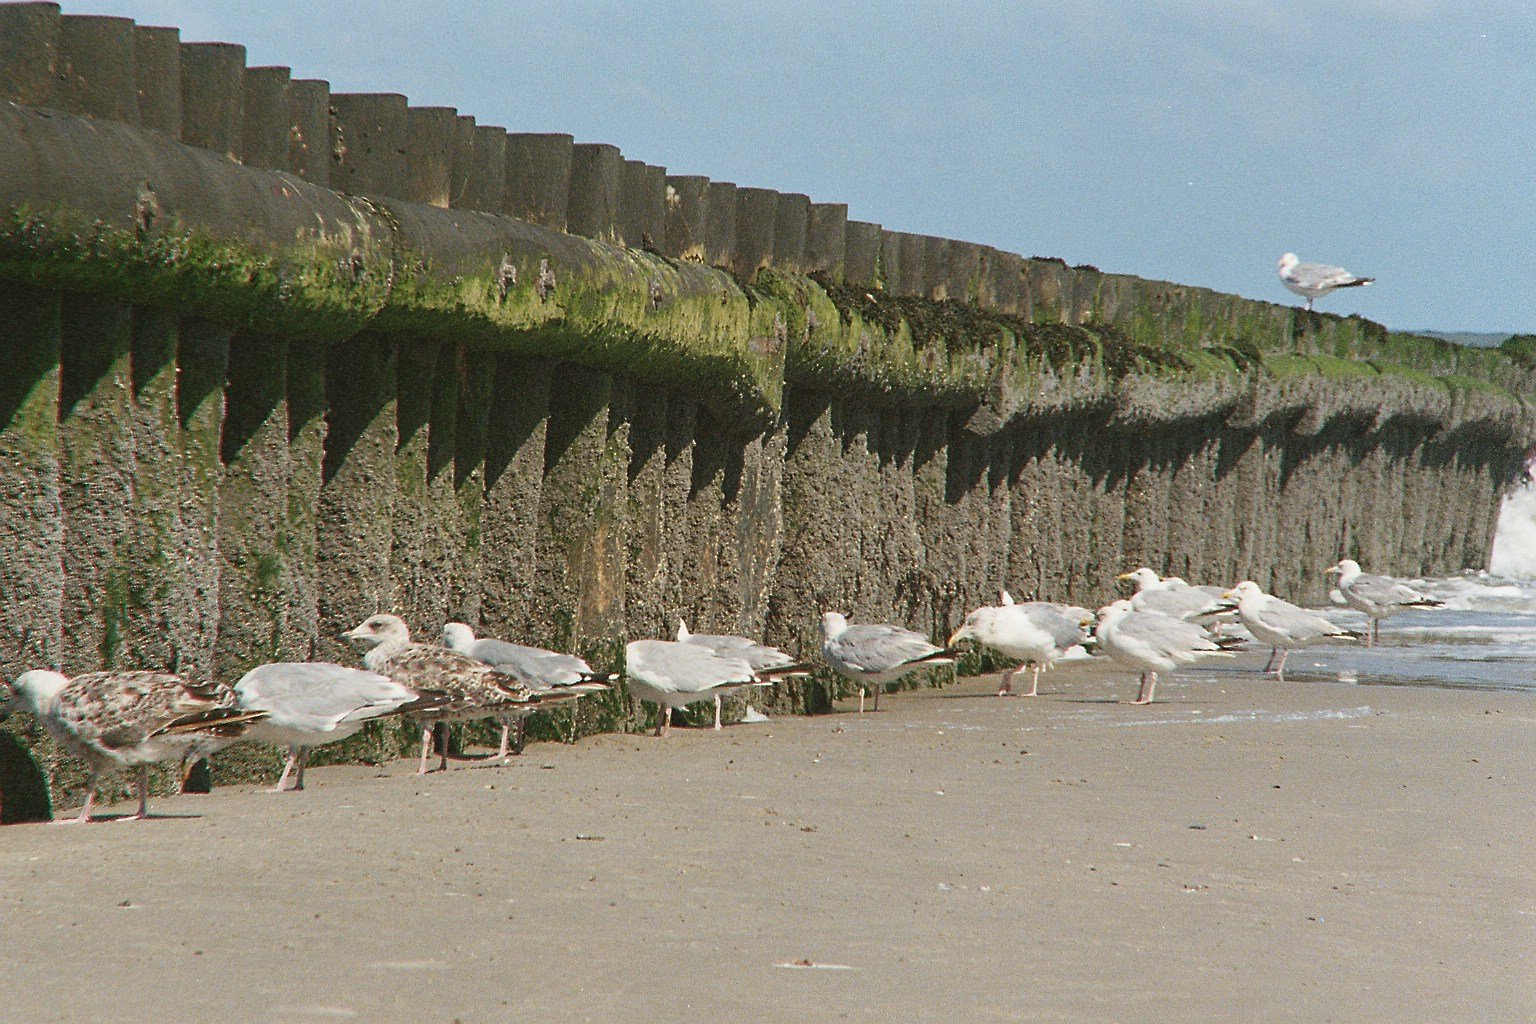 a group of seagulls on the beach near a wall